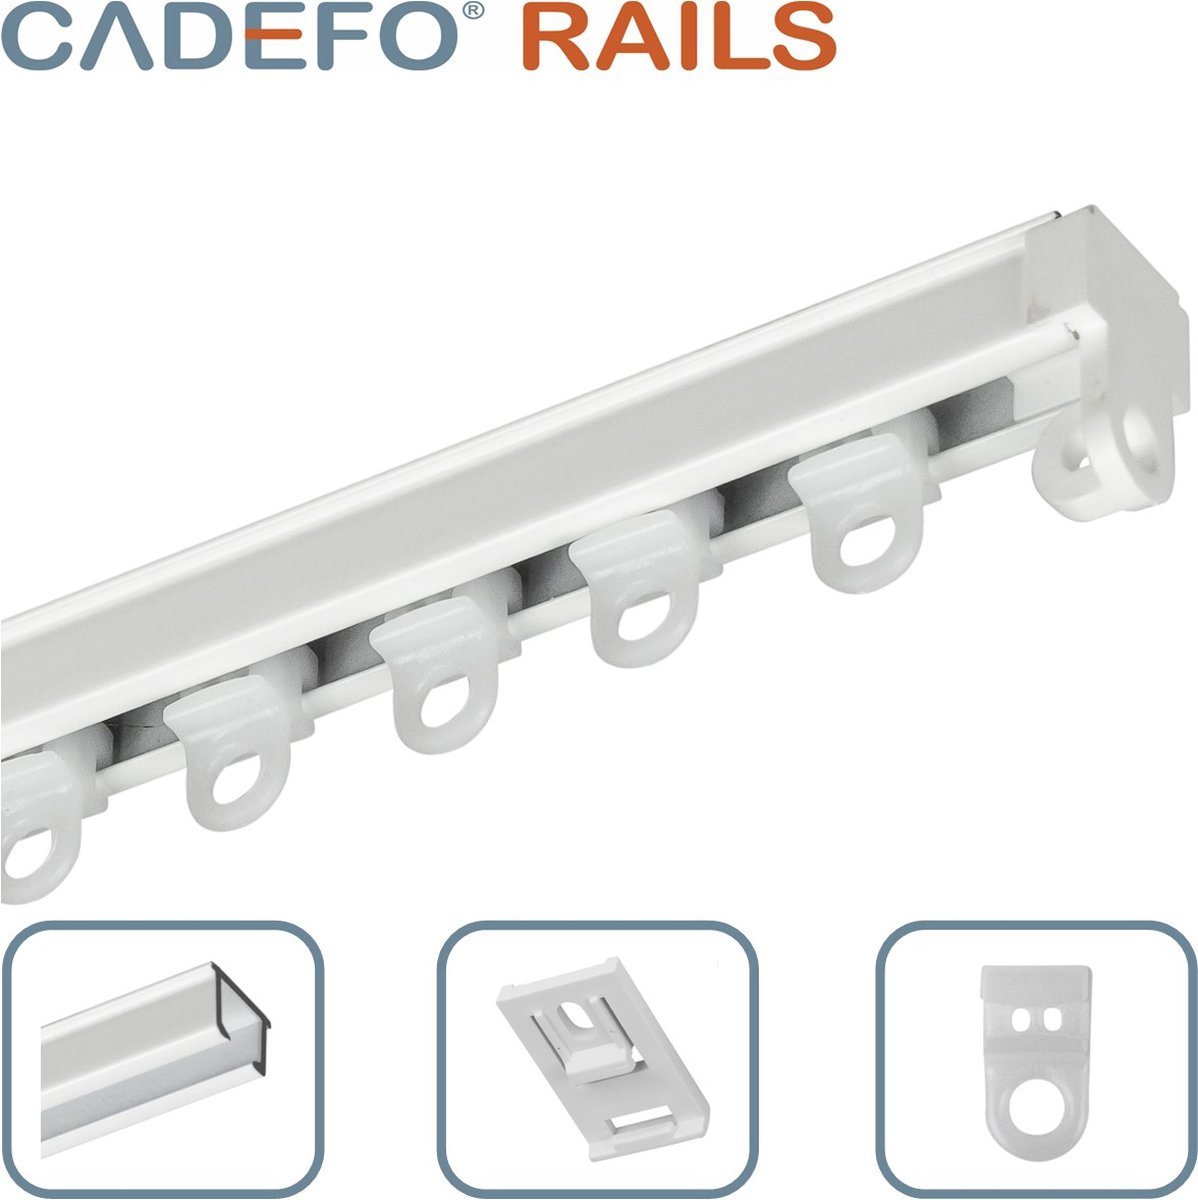 CADEFO RAILS (301 - 350 cm) Gordijnrails - Compleet op maat! - UIT 1 STUK - Leverbaar tot 6 meter - Plafondbevestiging - Lengte 327 cm